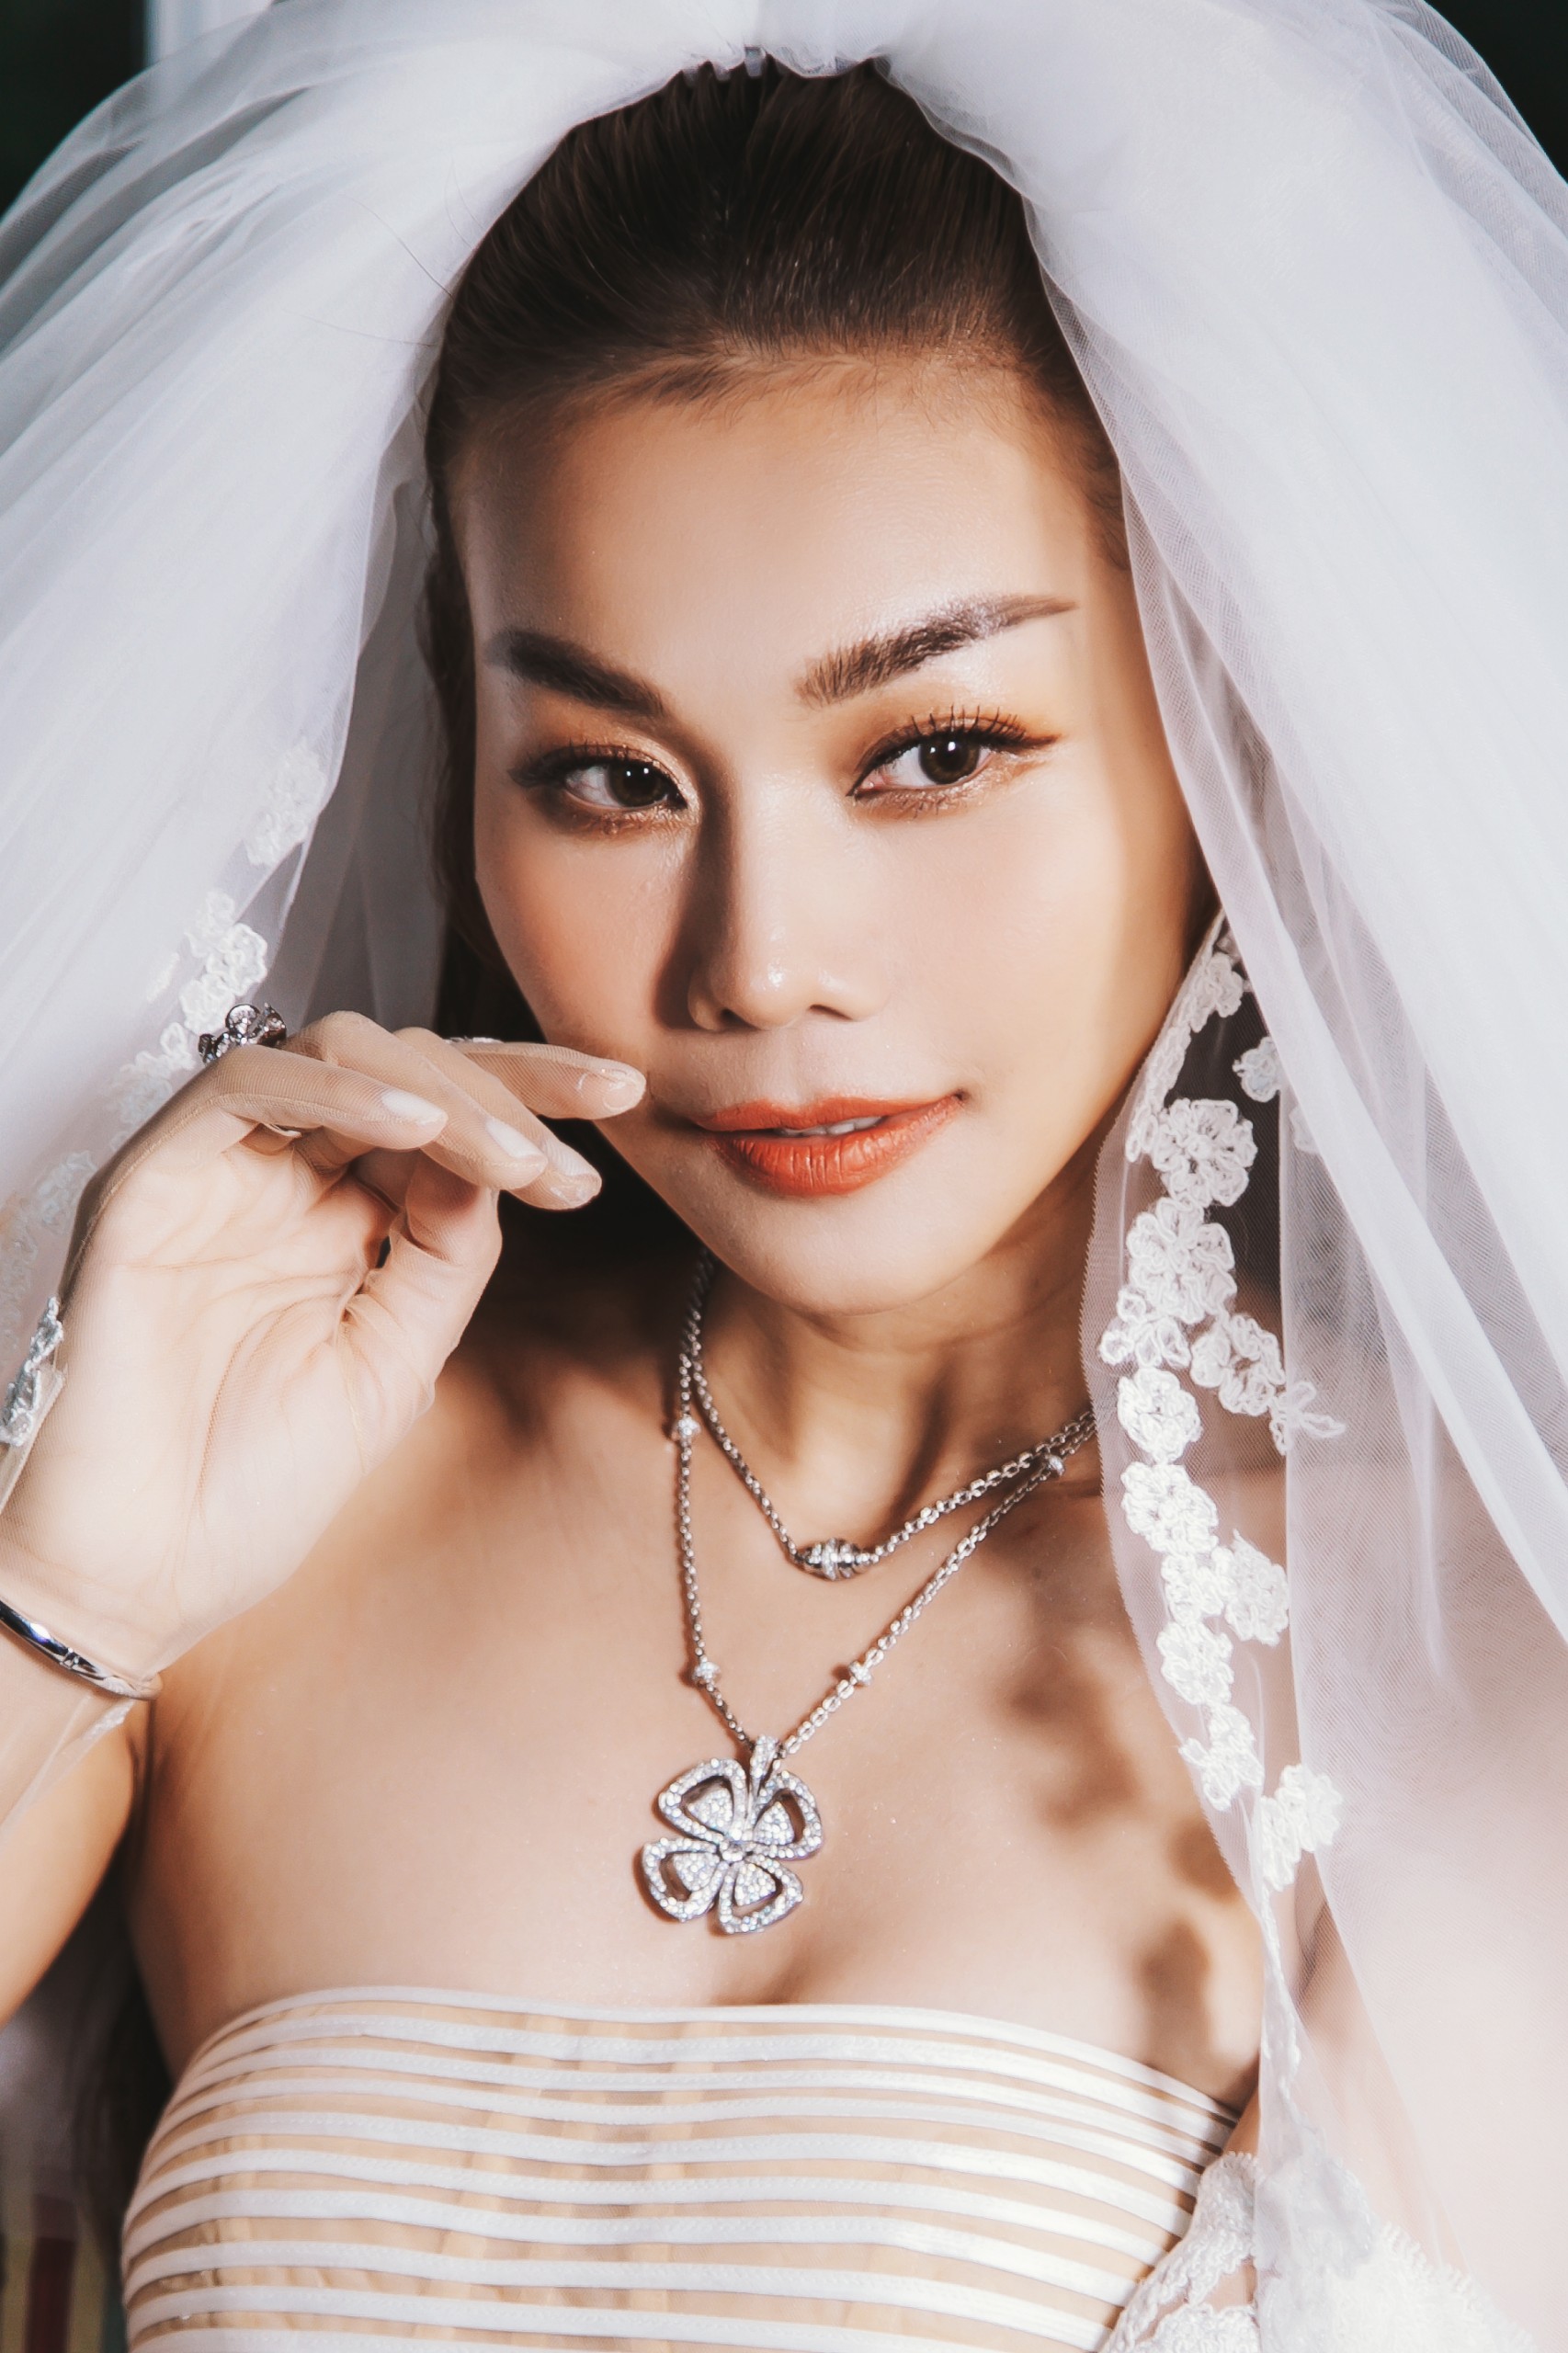 Siêu mẫu Thanh Hằng đeo trang sức hơn 10 tỉ đồng trong đám cưới - Ảnh 3.